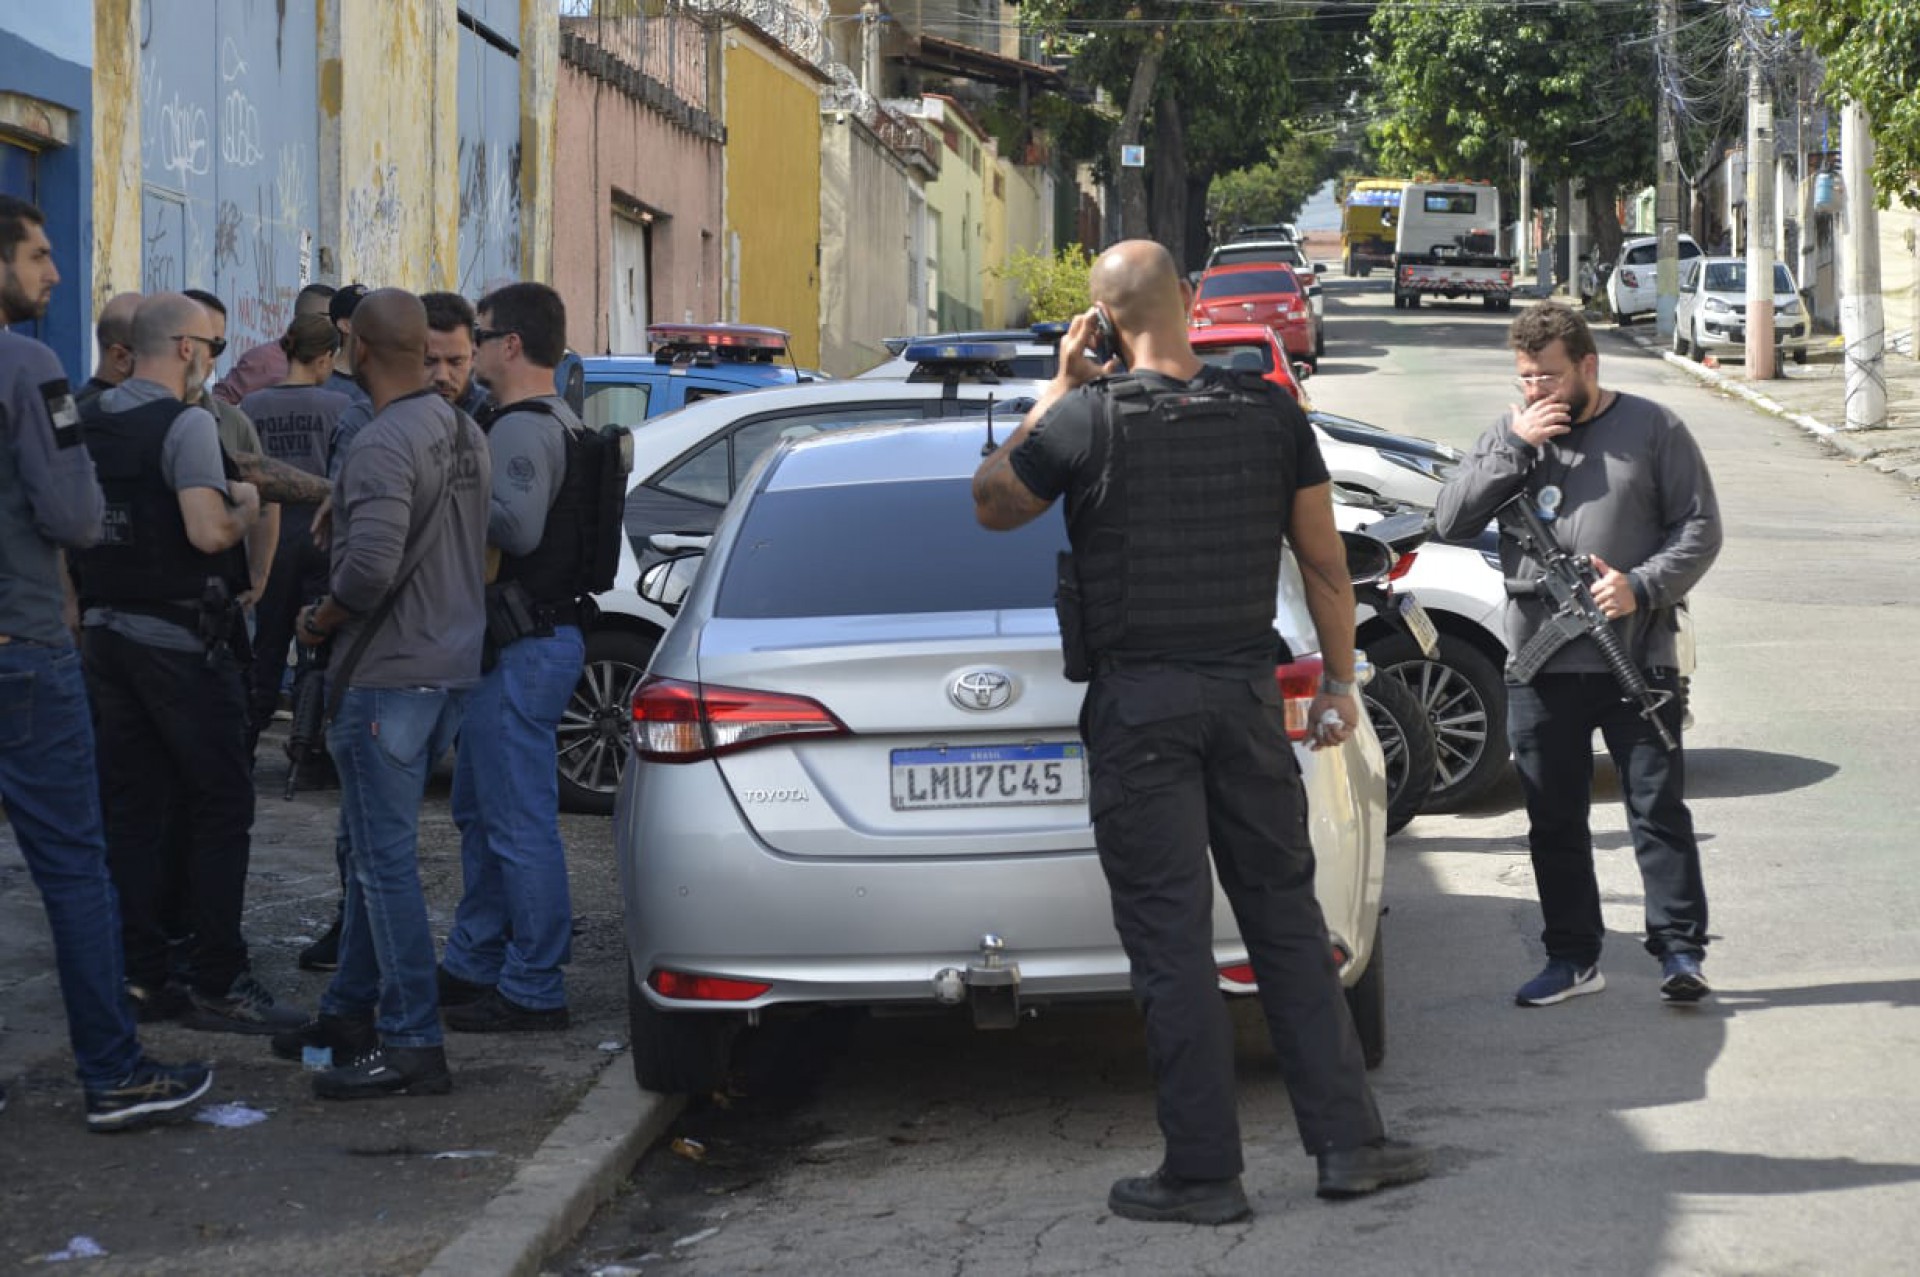 Agente estava no banco do motorista de um carro quando foi encontrado por policiais - Fabio Costa/ Agência O Dia